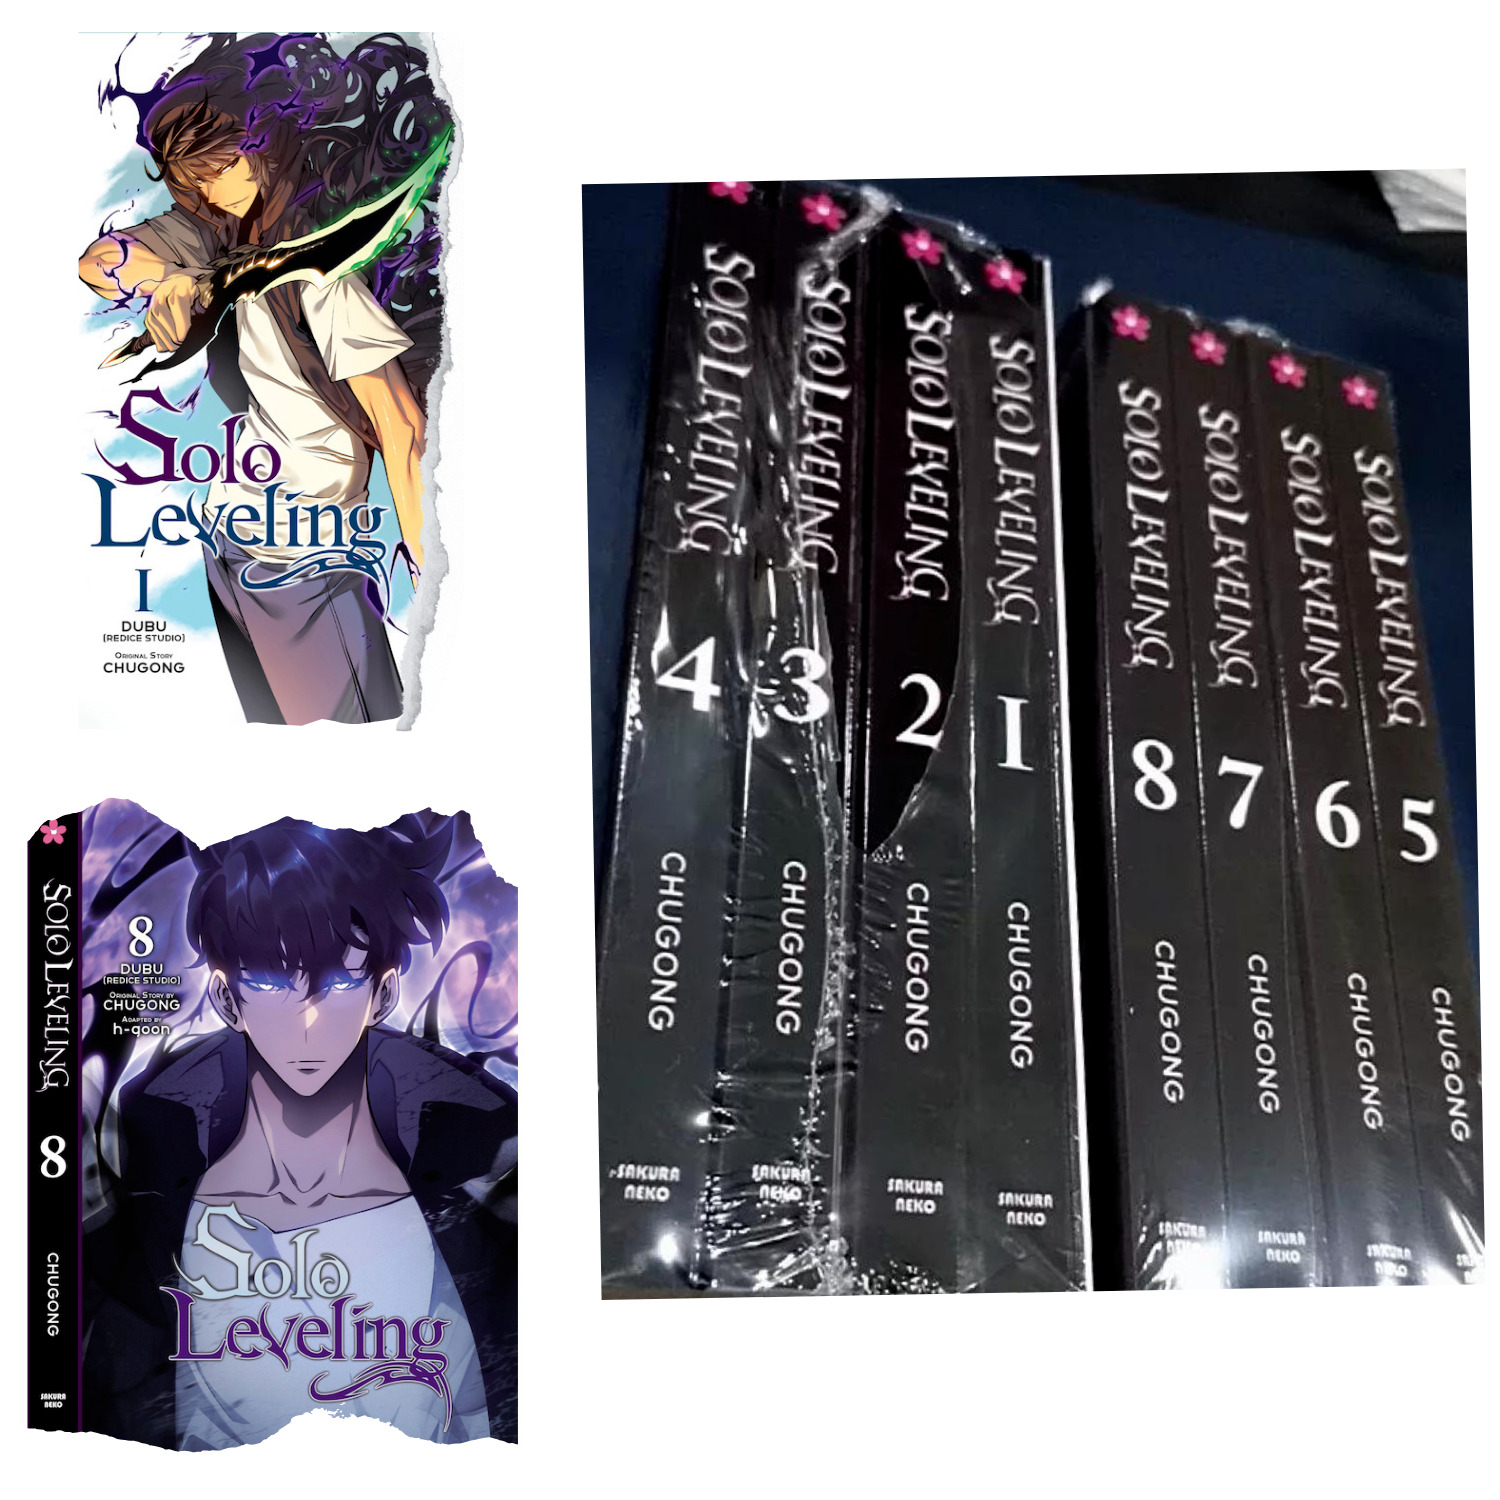 SOLO LEVELING (English Comics) Vol 1-8 Full Set Complete New Manga Anime DHL Exp